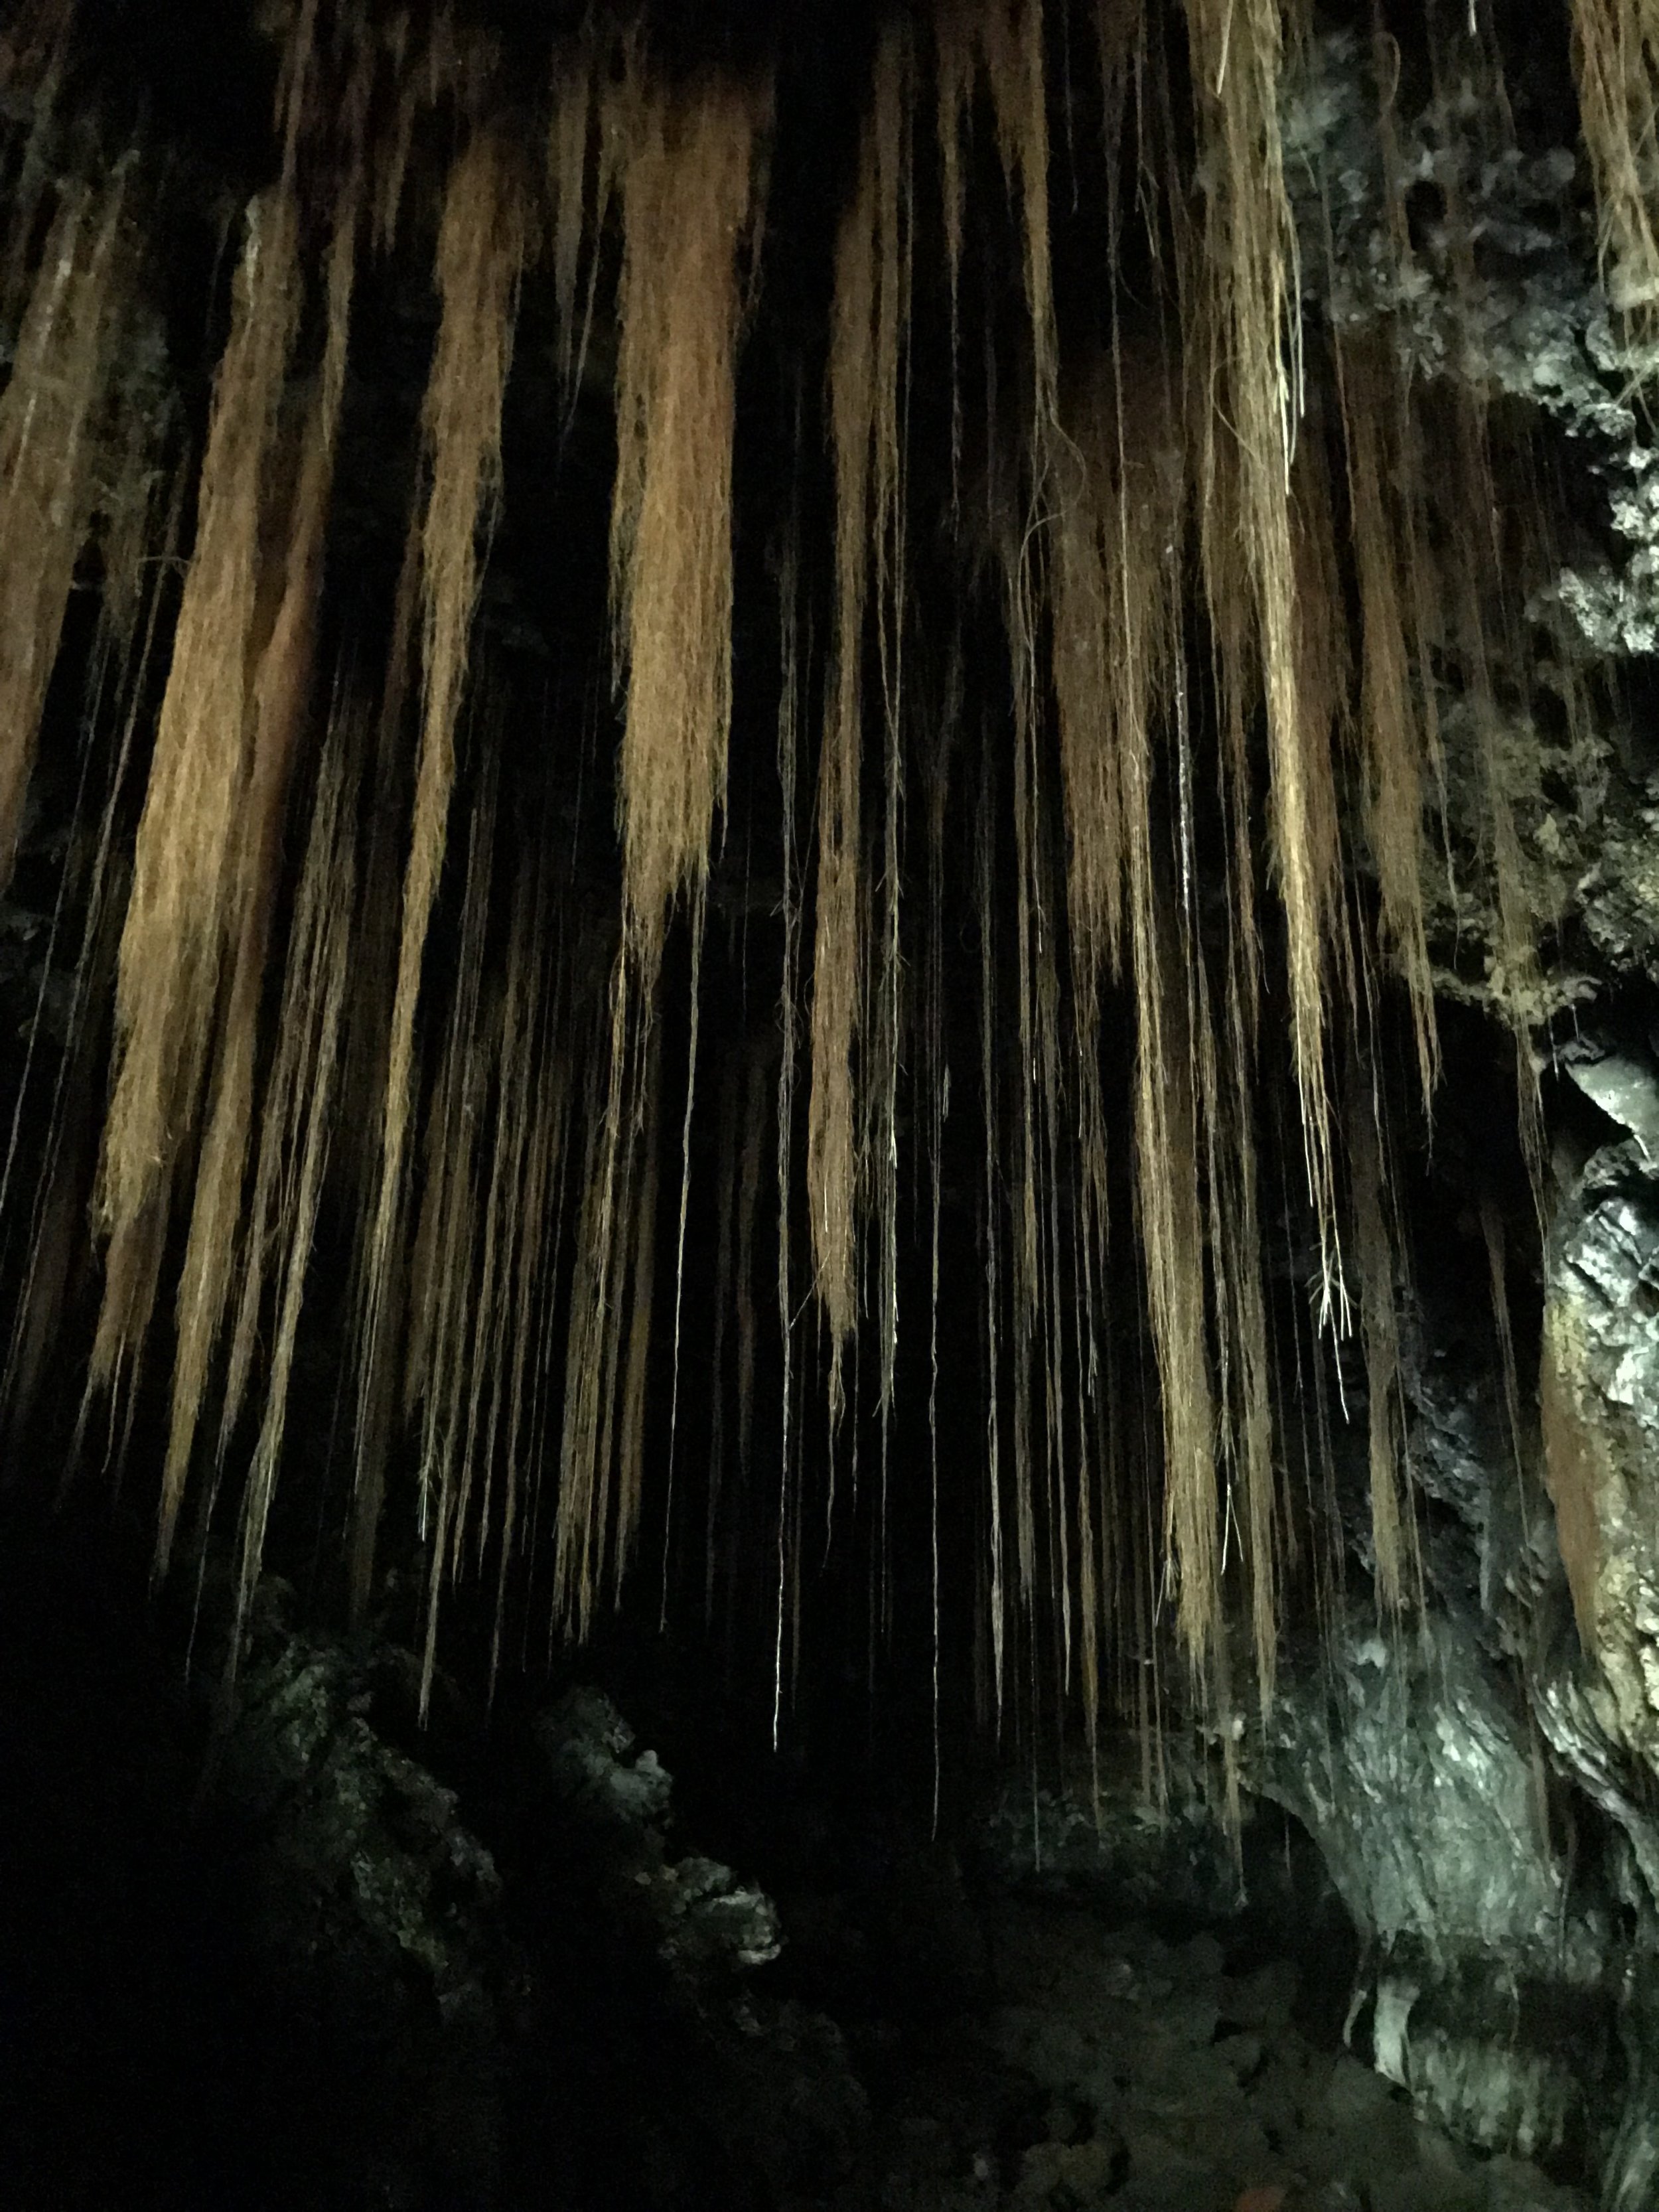 Kaumana Caves - Hilo, Hawaii Island